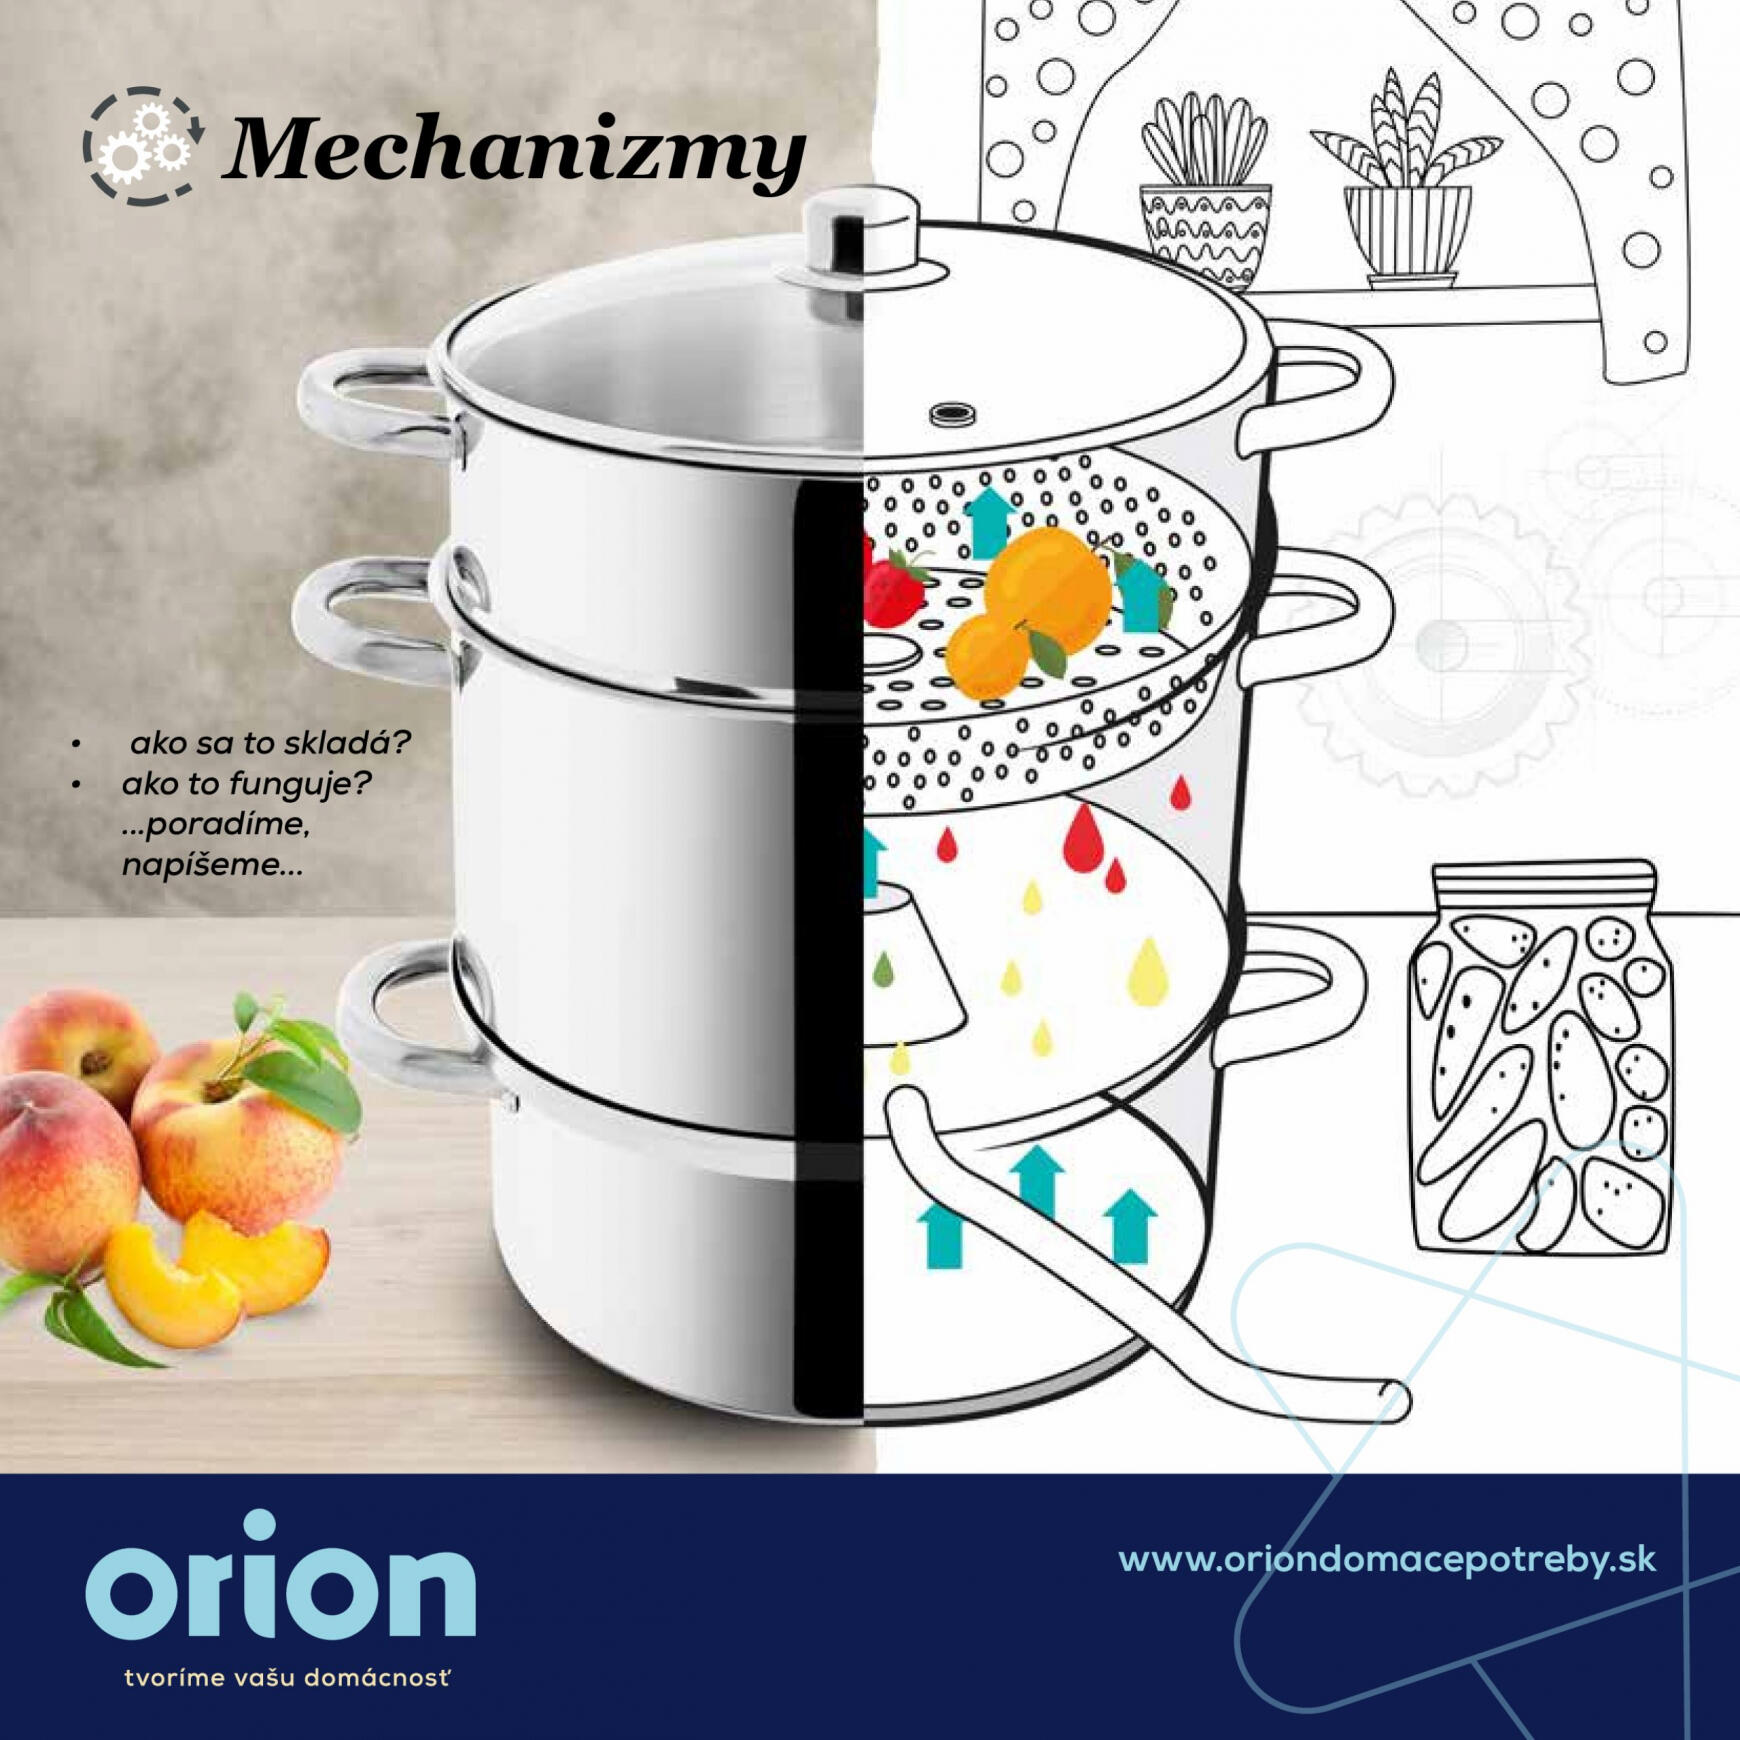 orion - Orion - Ako fungujú mechanizmy strojčekov, mlynčekov...